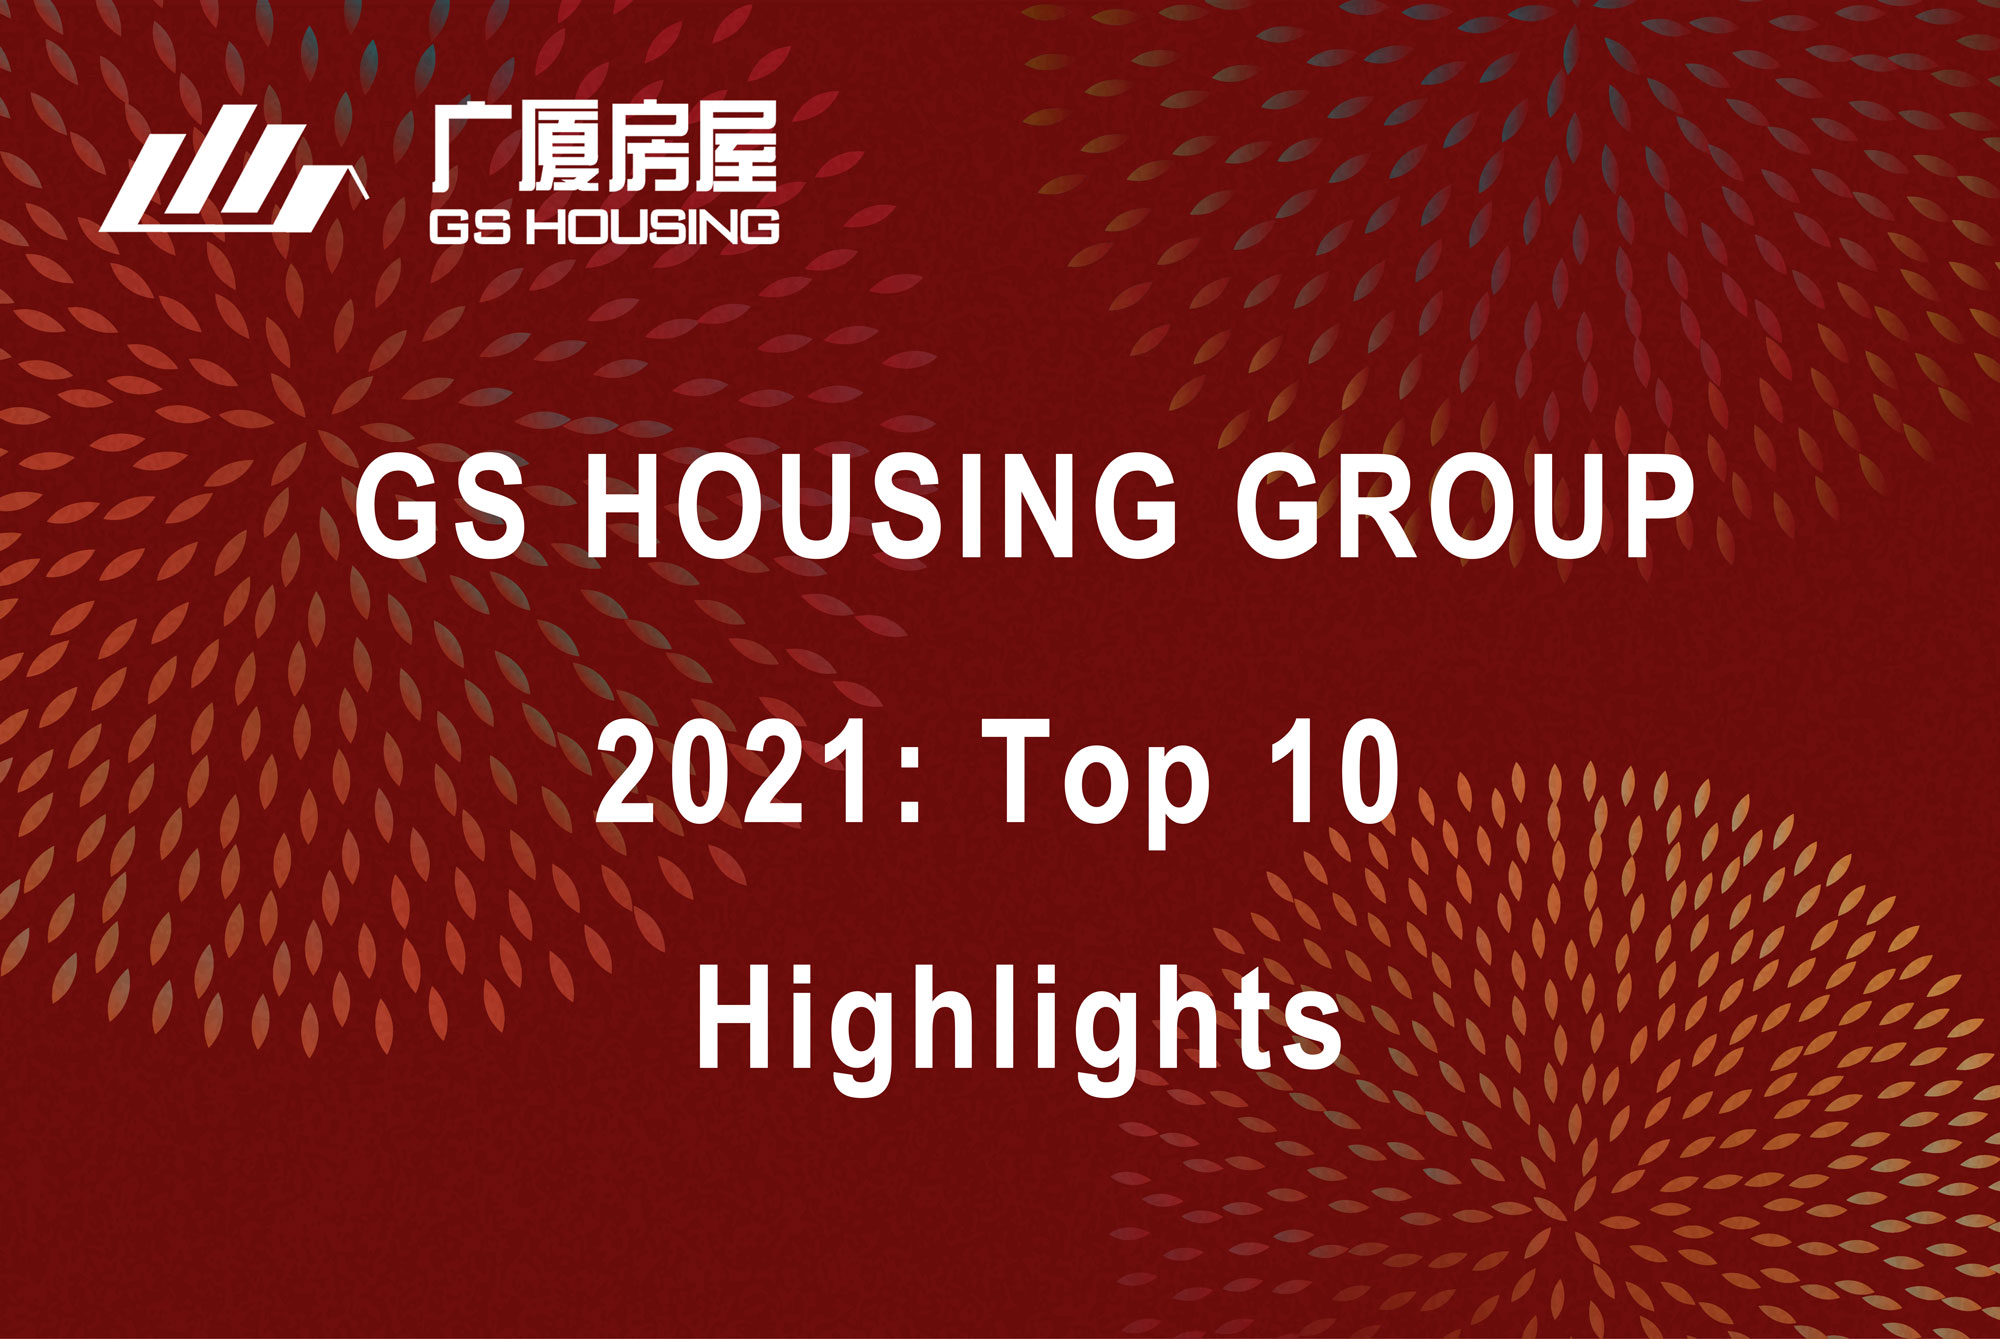 Peržiūrėkite 10 svarbiausių 2021 m. įvykių „GS Housing Group“.